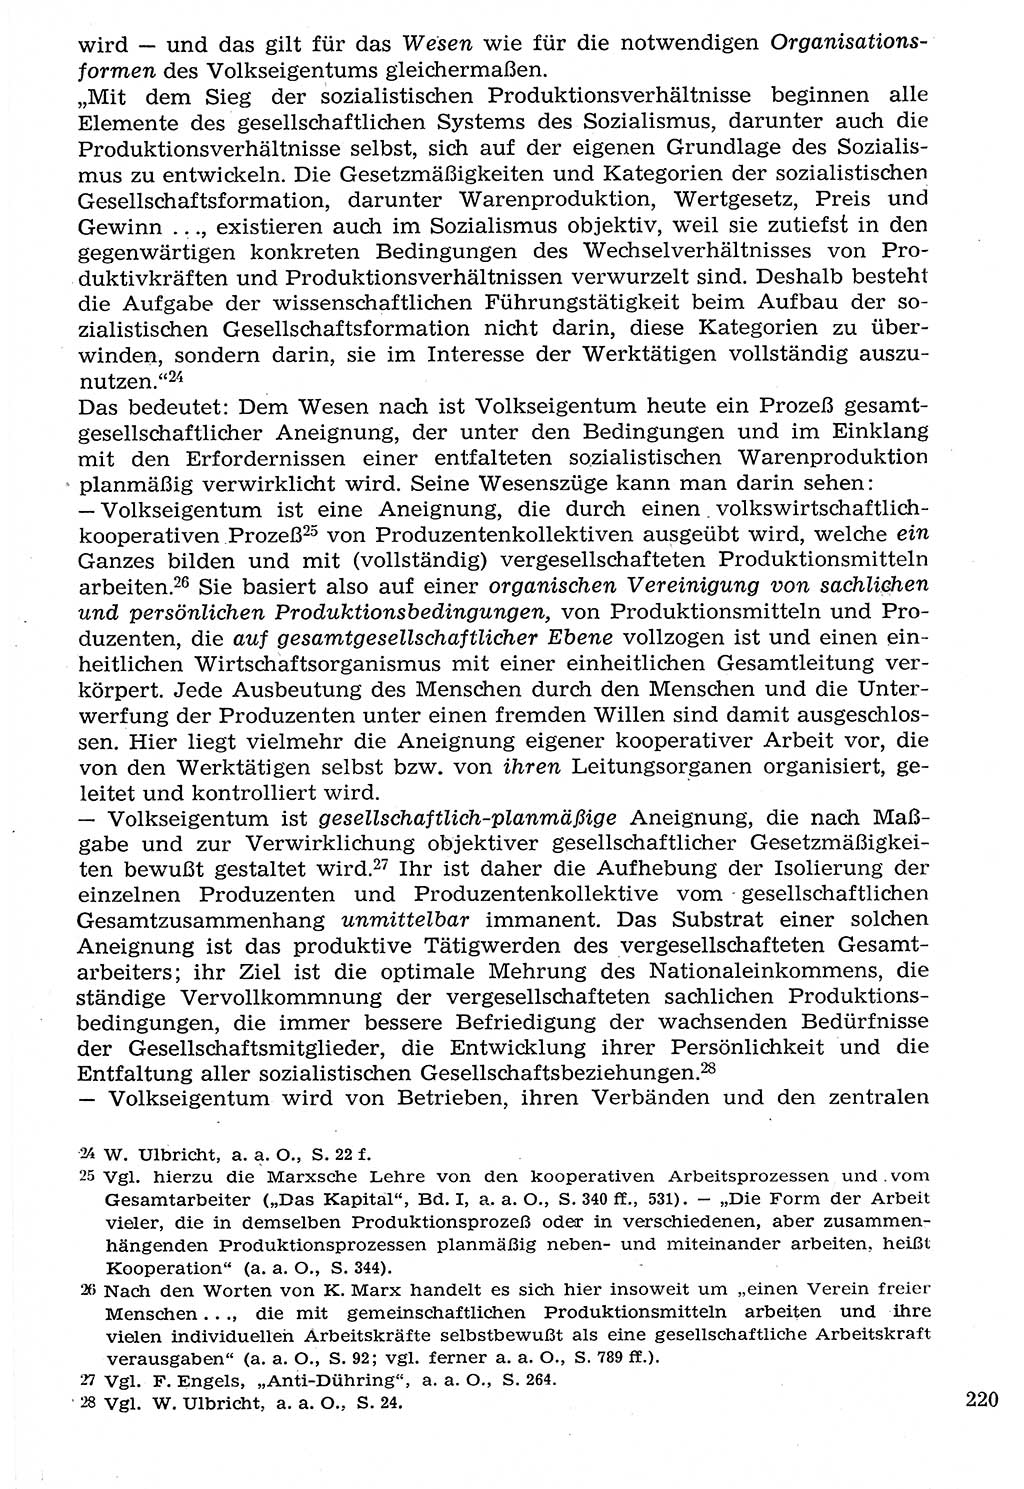 Staat und Recht (StuR), 17. Jahrgang [Deutsche Demokratische Republik (DDR)] 1968, Seite 220 (StuR DDR 1968, S. 220)